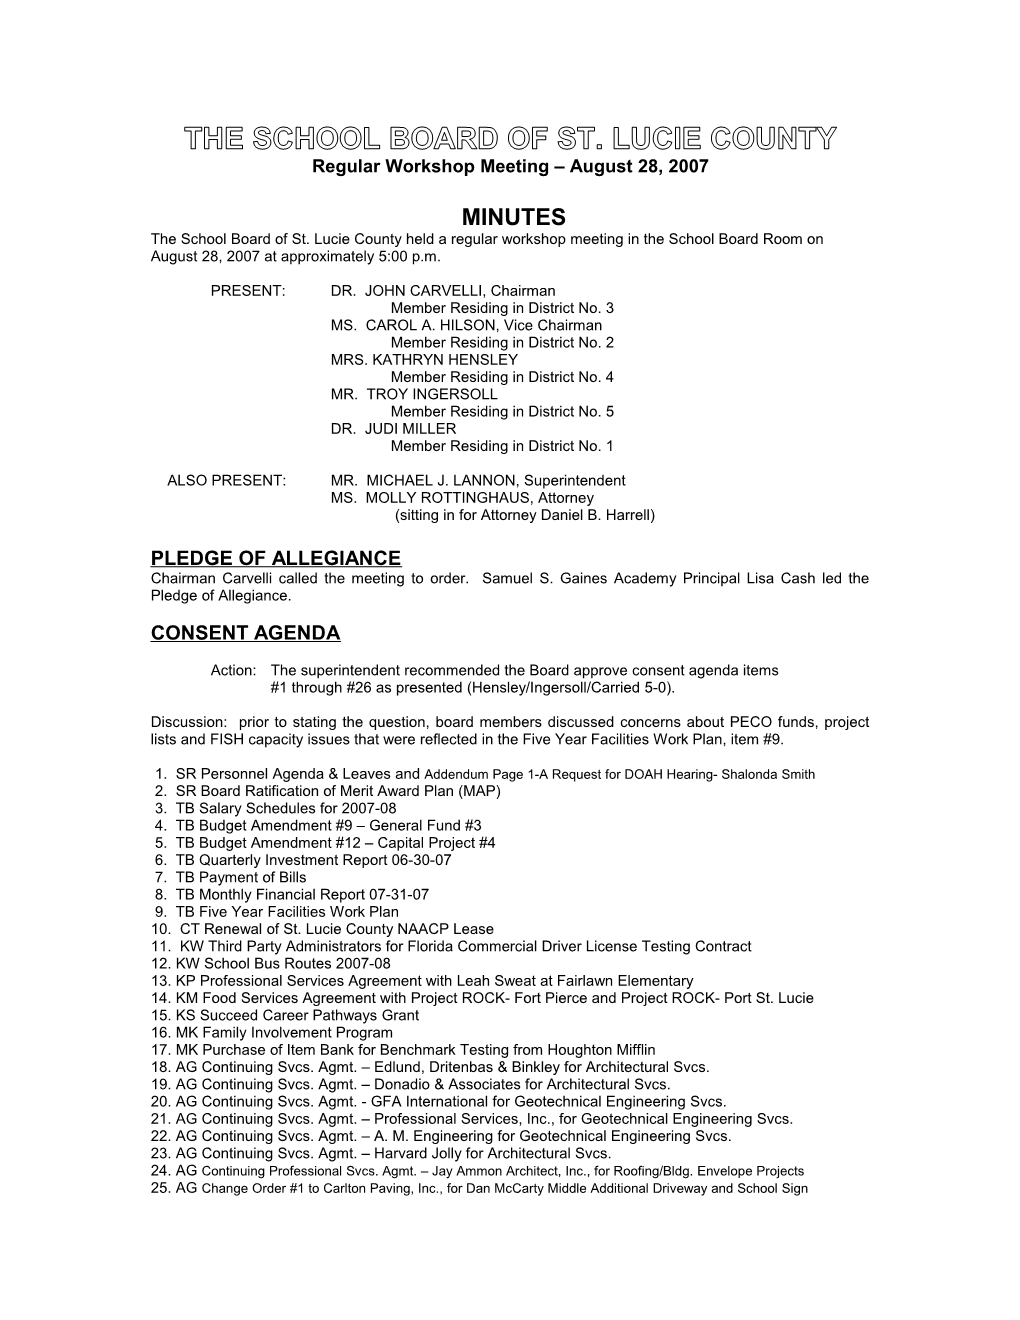 08-28-07 SLCSB Regular Workshop Minutes